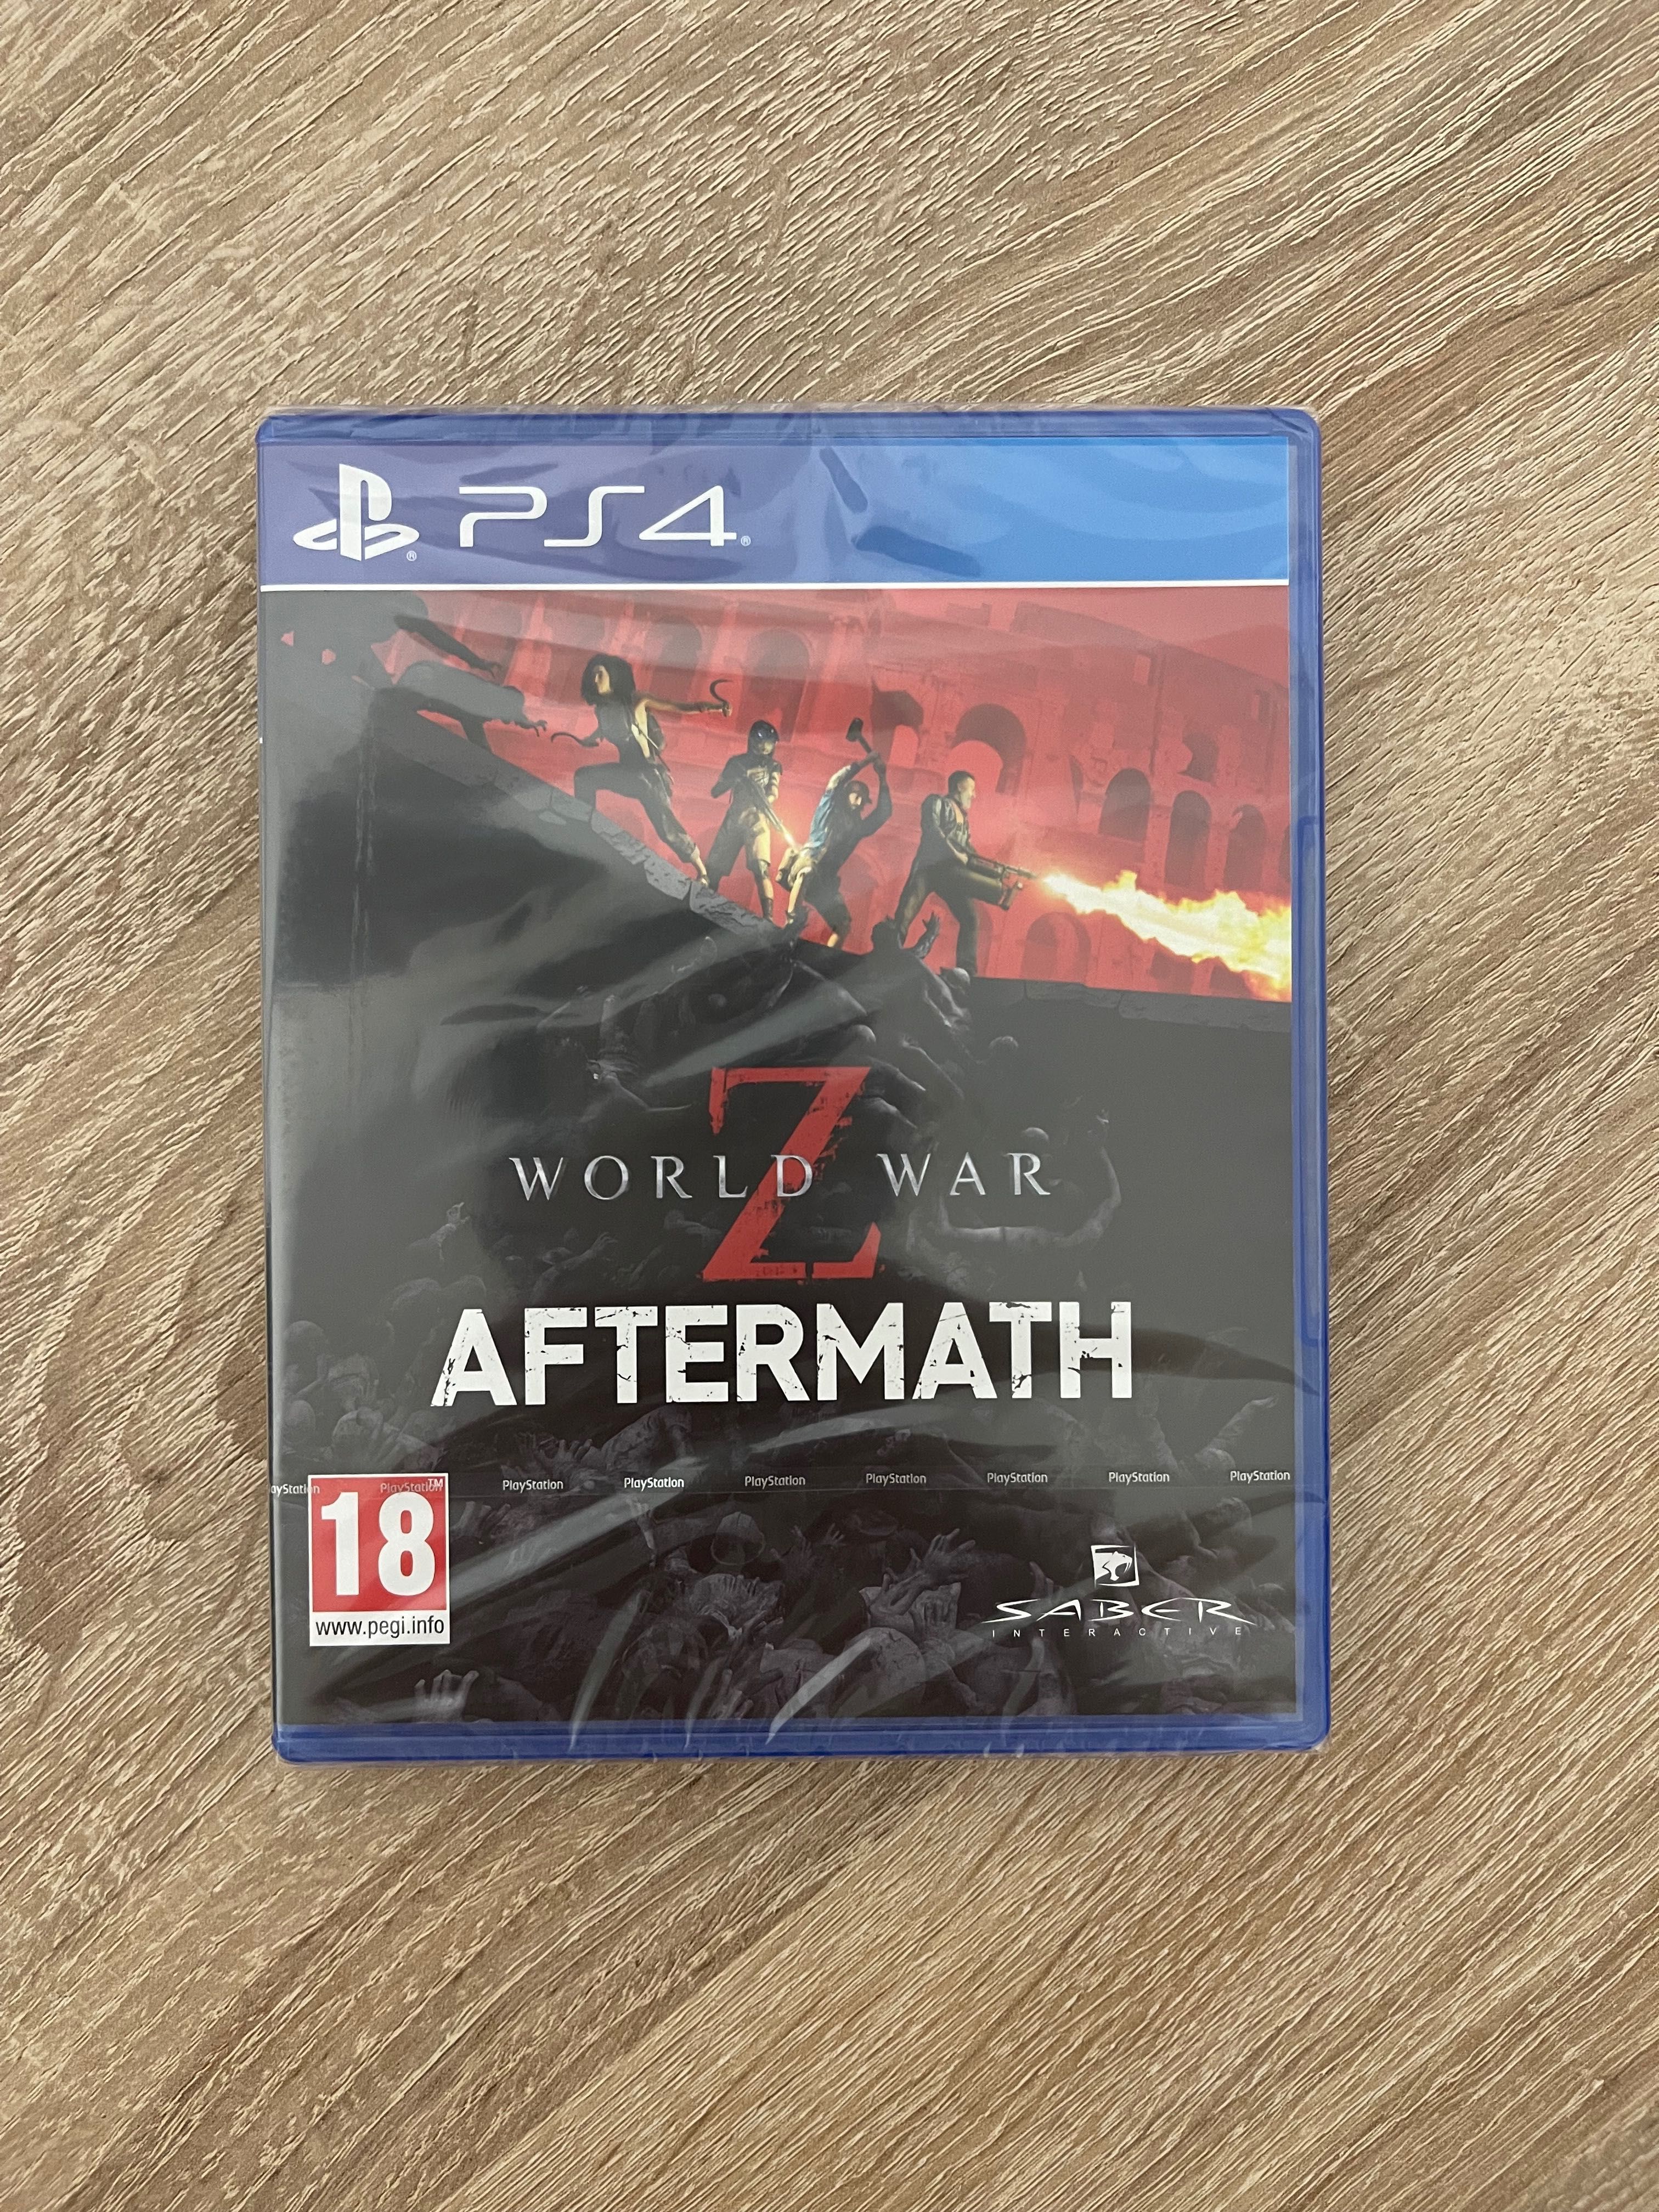 World War Z Aftermath PS4 nowa w folii polska wersja